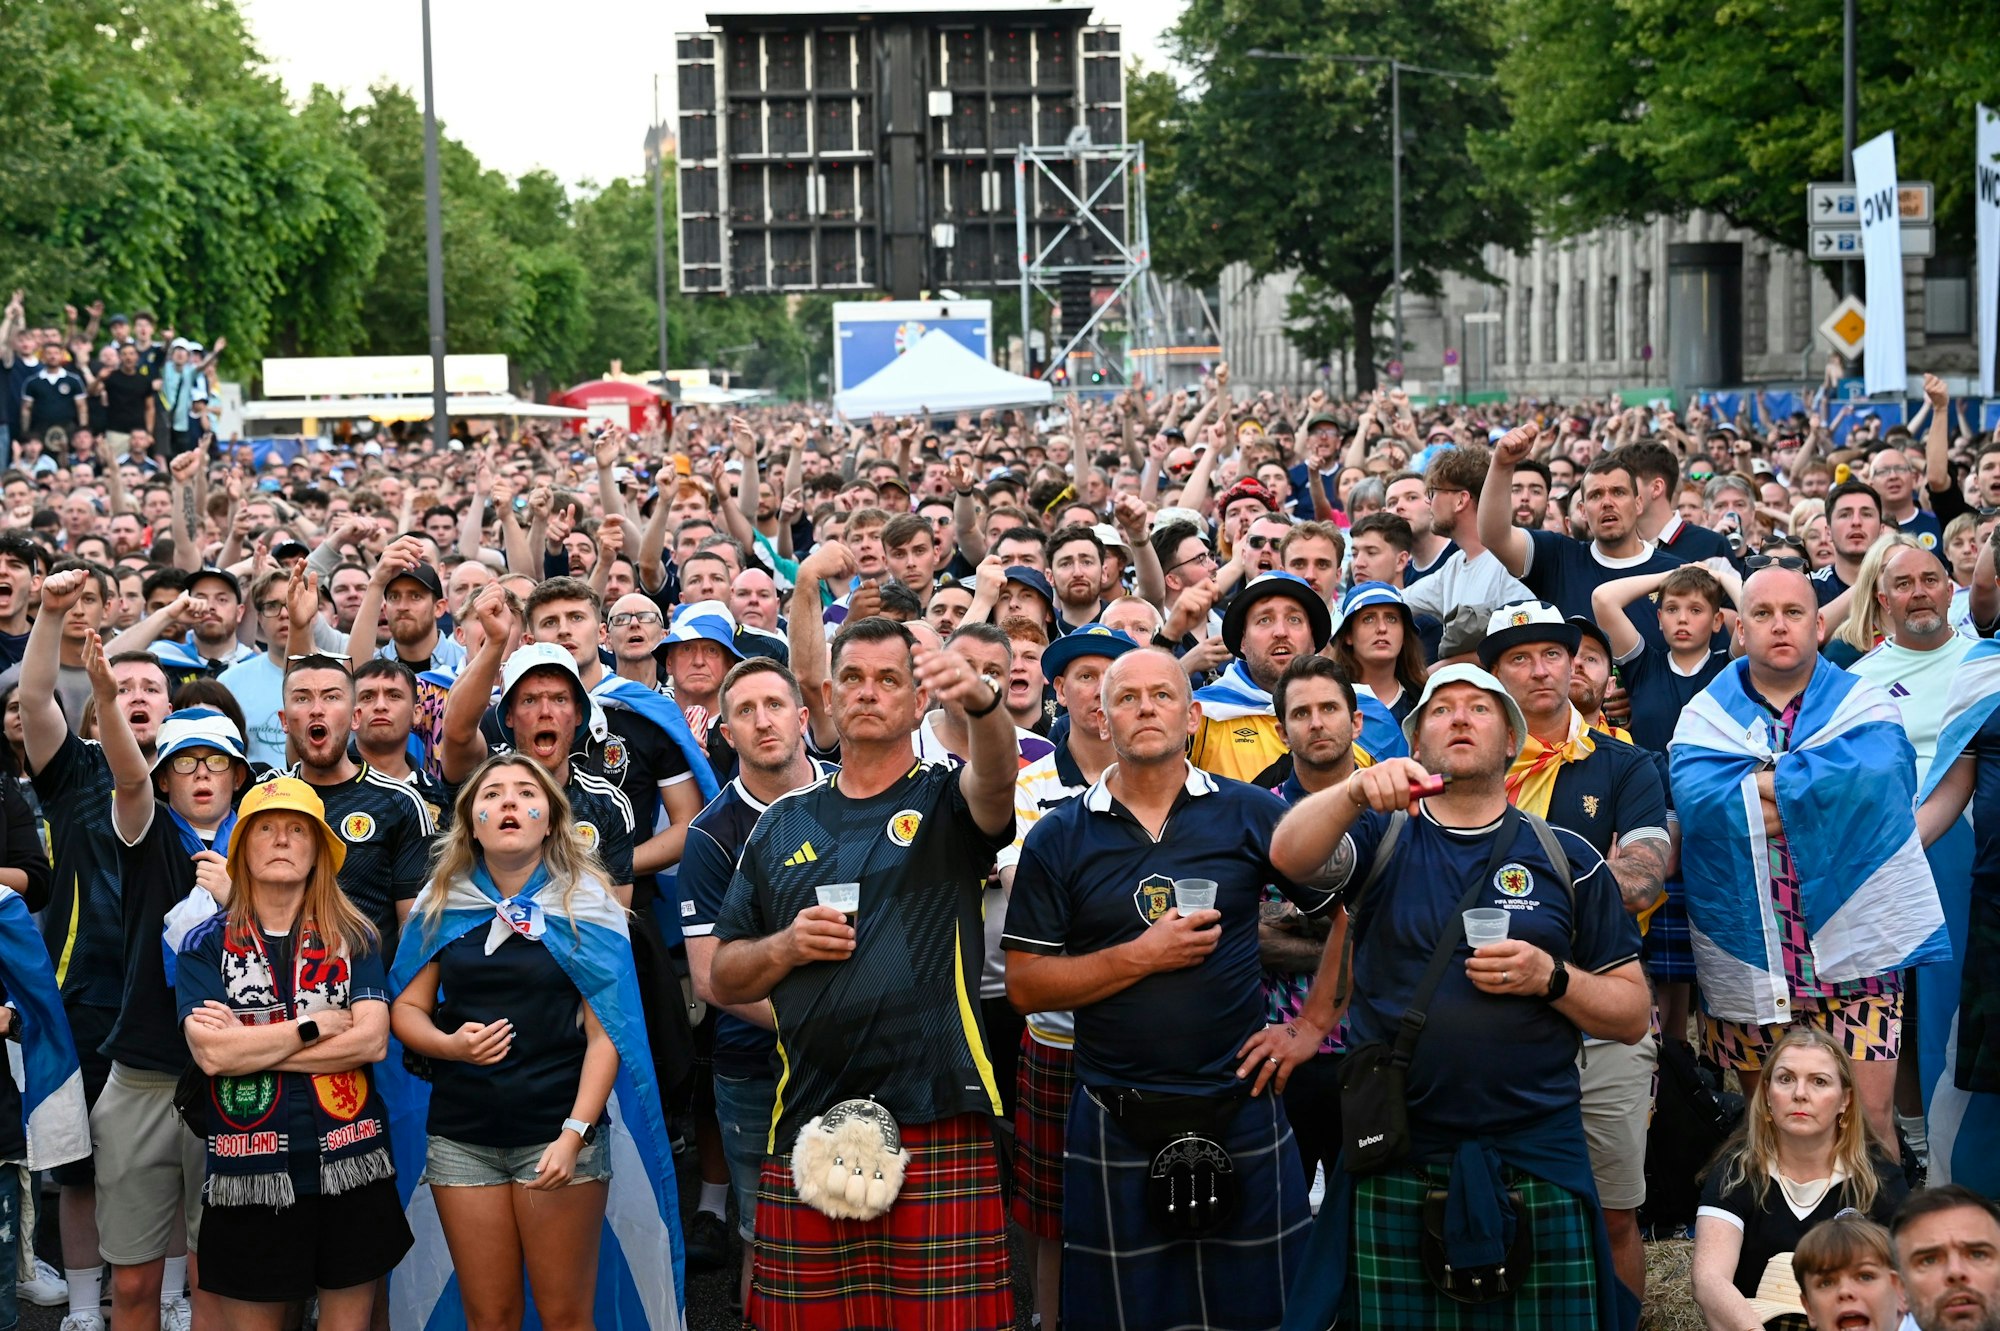 Schottland-Fans beim Public Viewing am Konrad-Adenauer-Ufer in Köln.